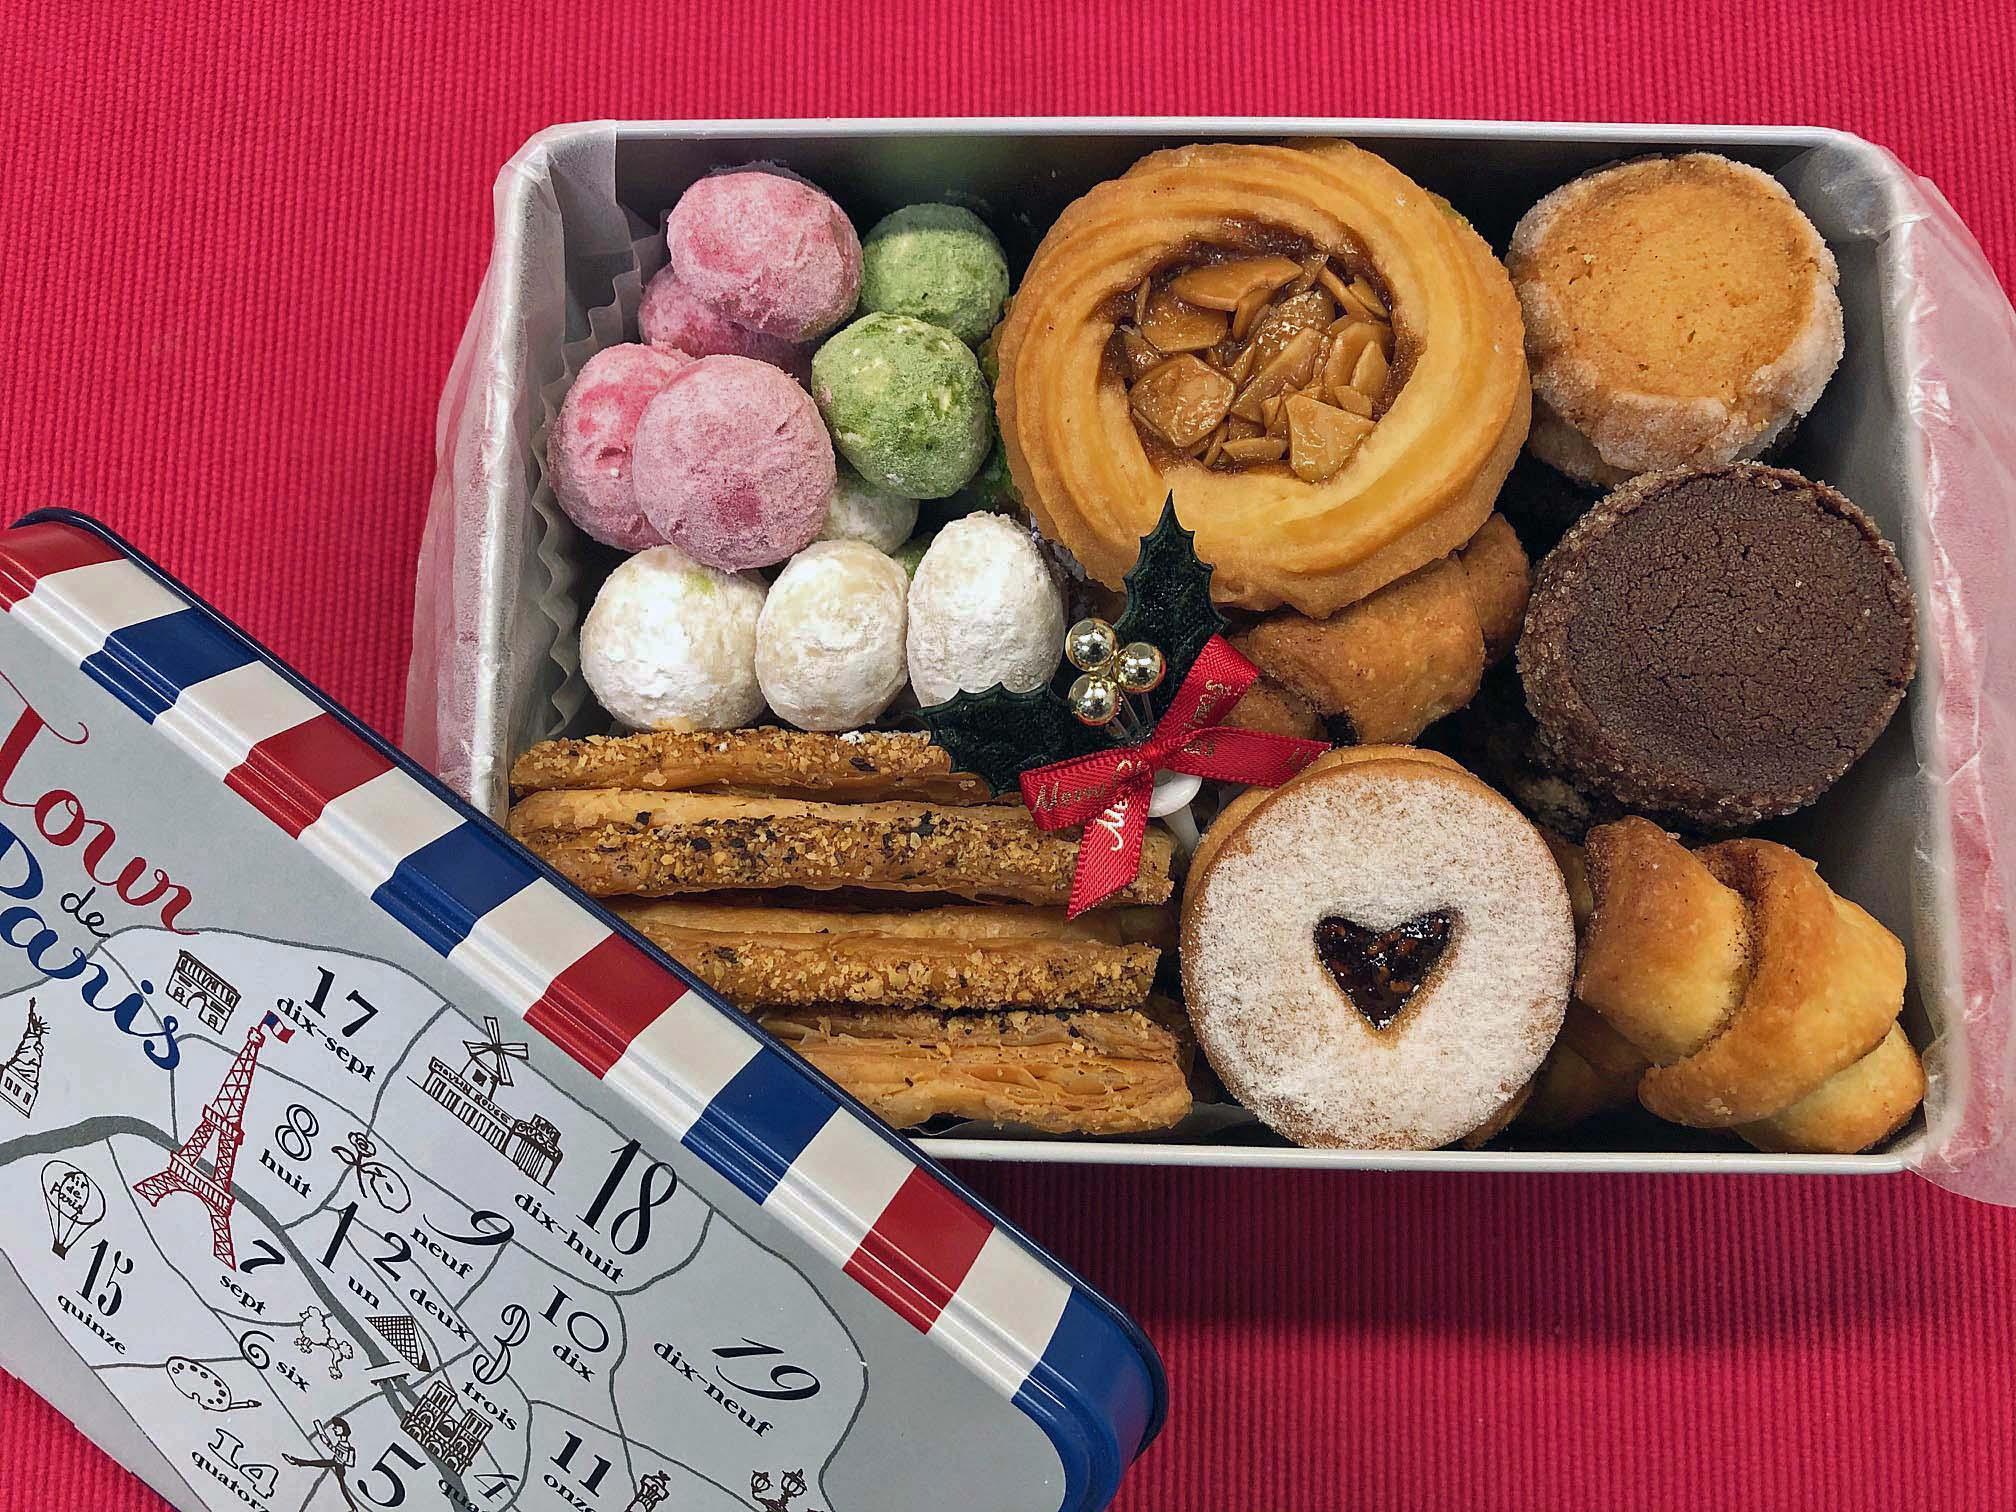 今年のクリスマスプレゼントに美味しいクッキー缶を 開催 イグレックのお菓子教室 東京都世田谷区 の21年4月レッスン情報 料理教室検索サイト クスパ